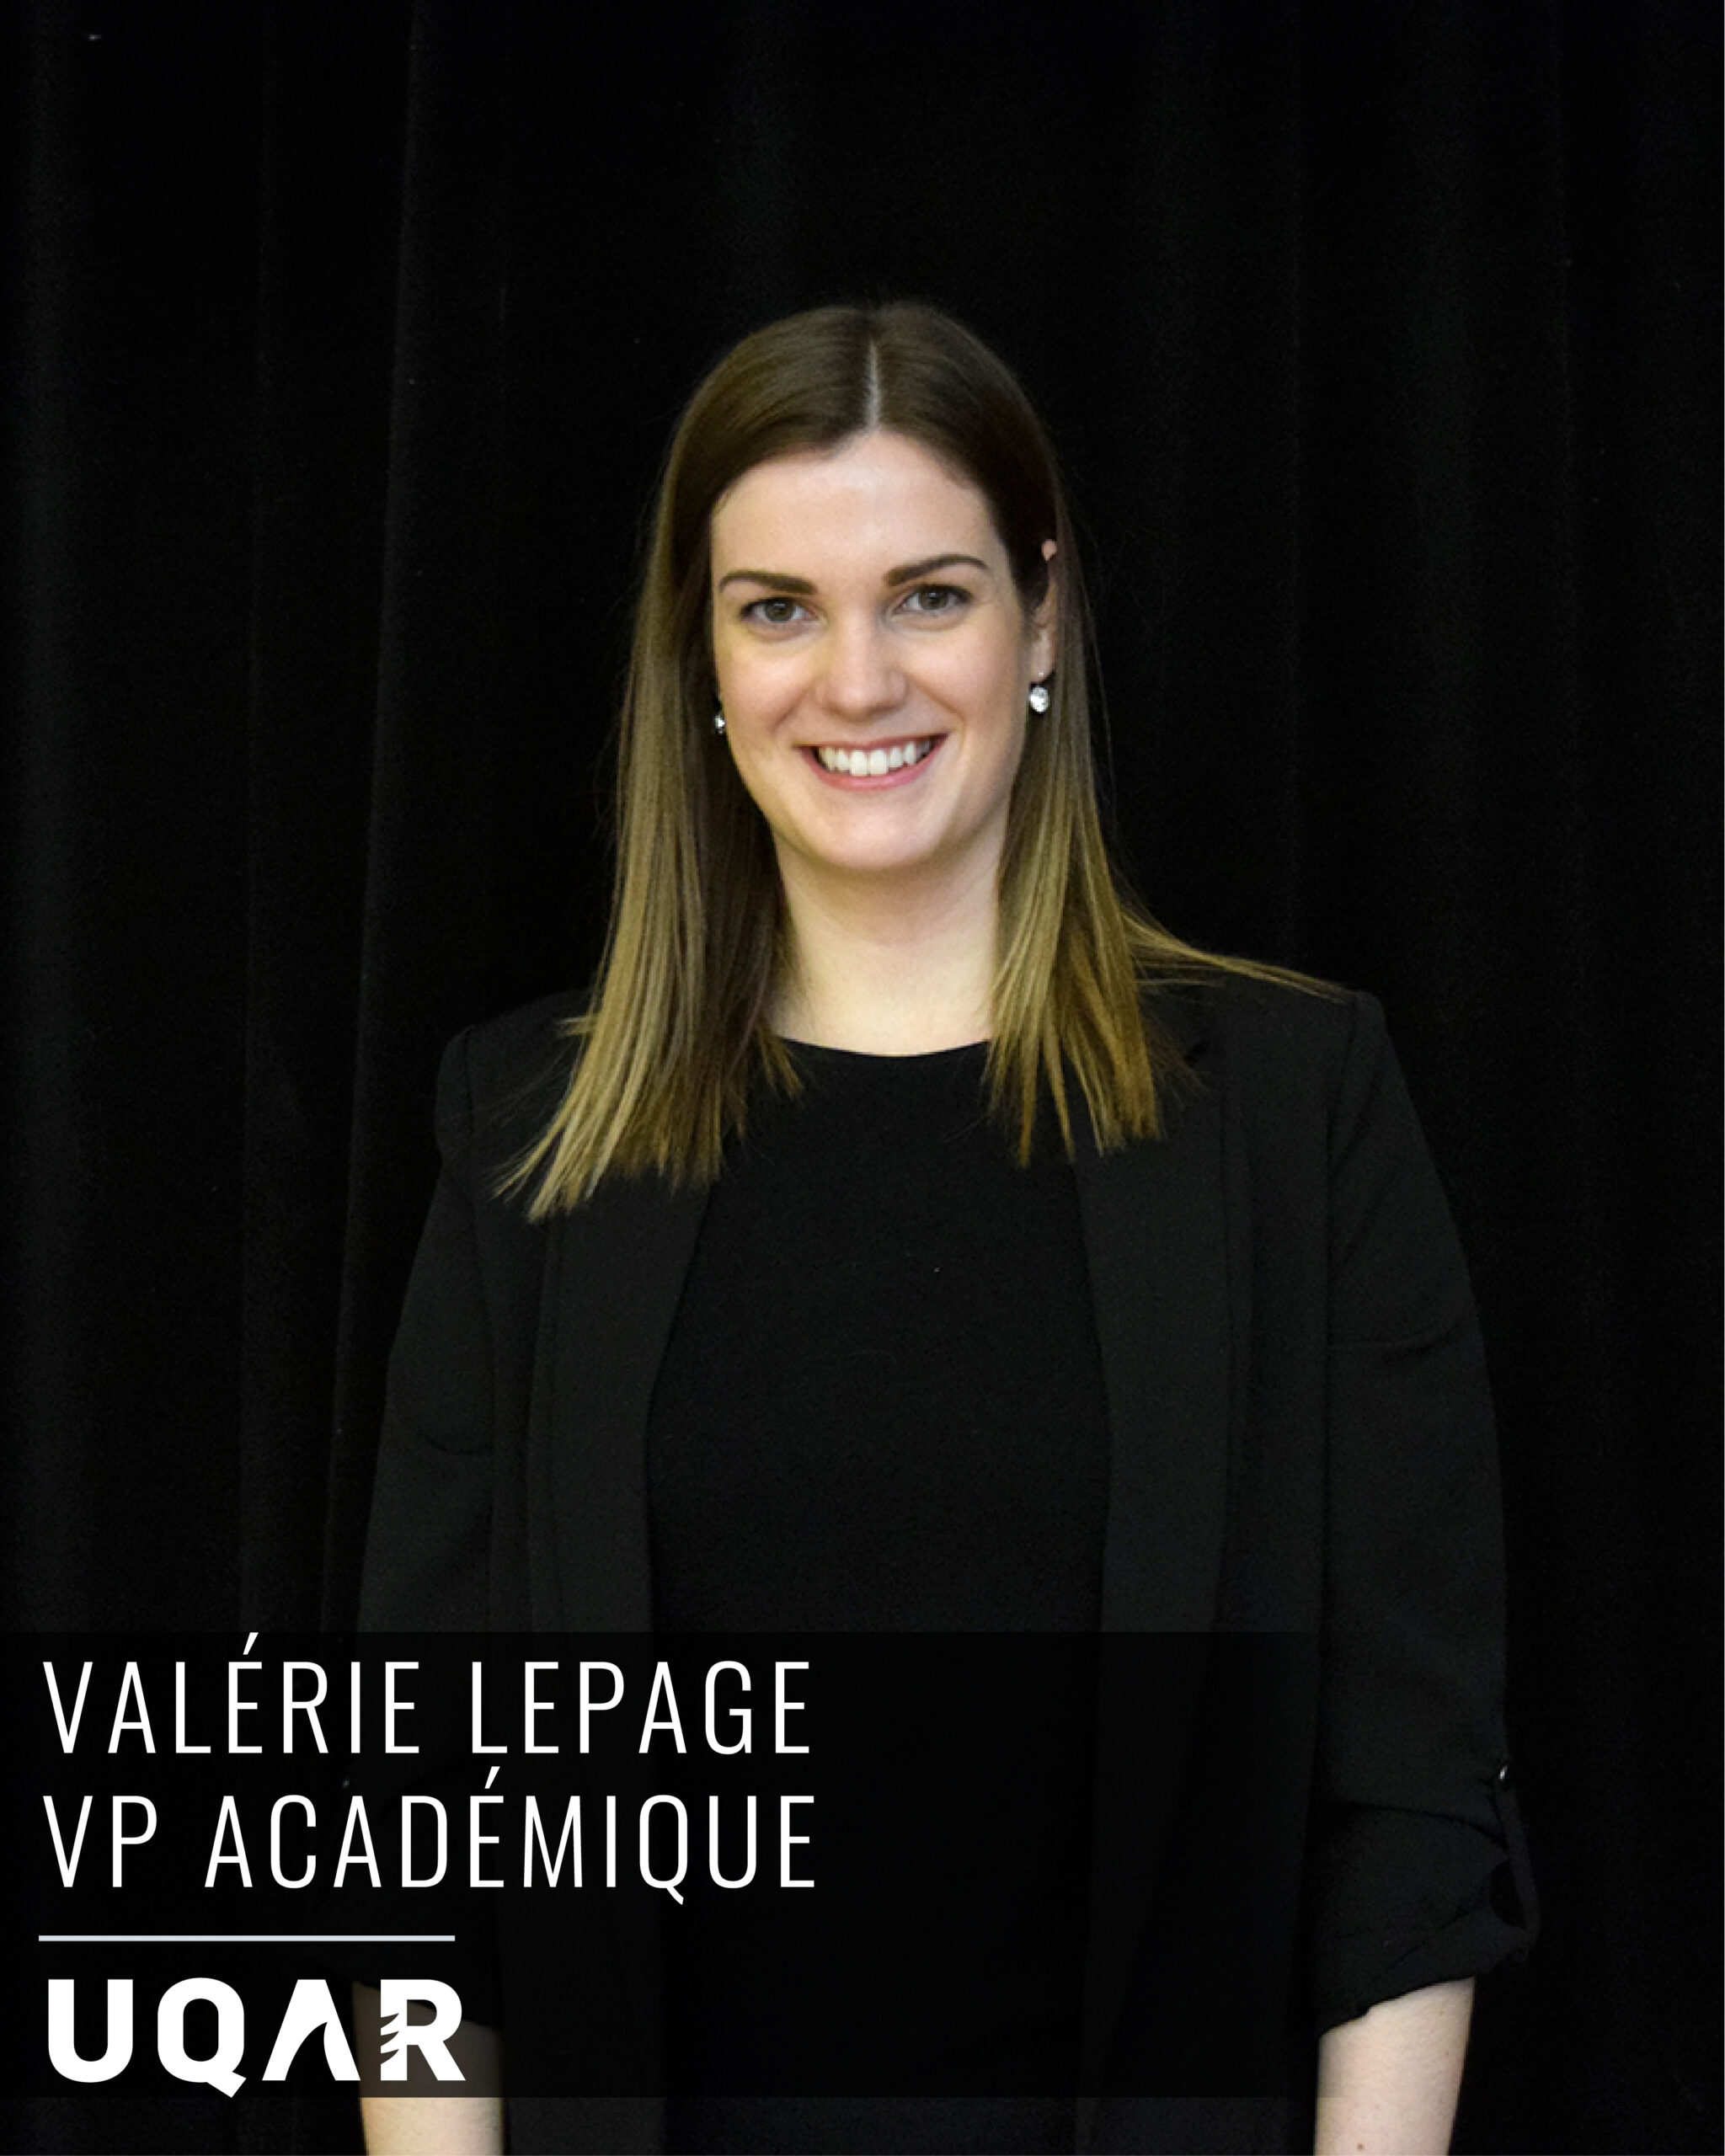 Valérie Lepage